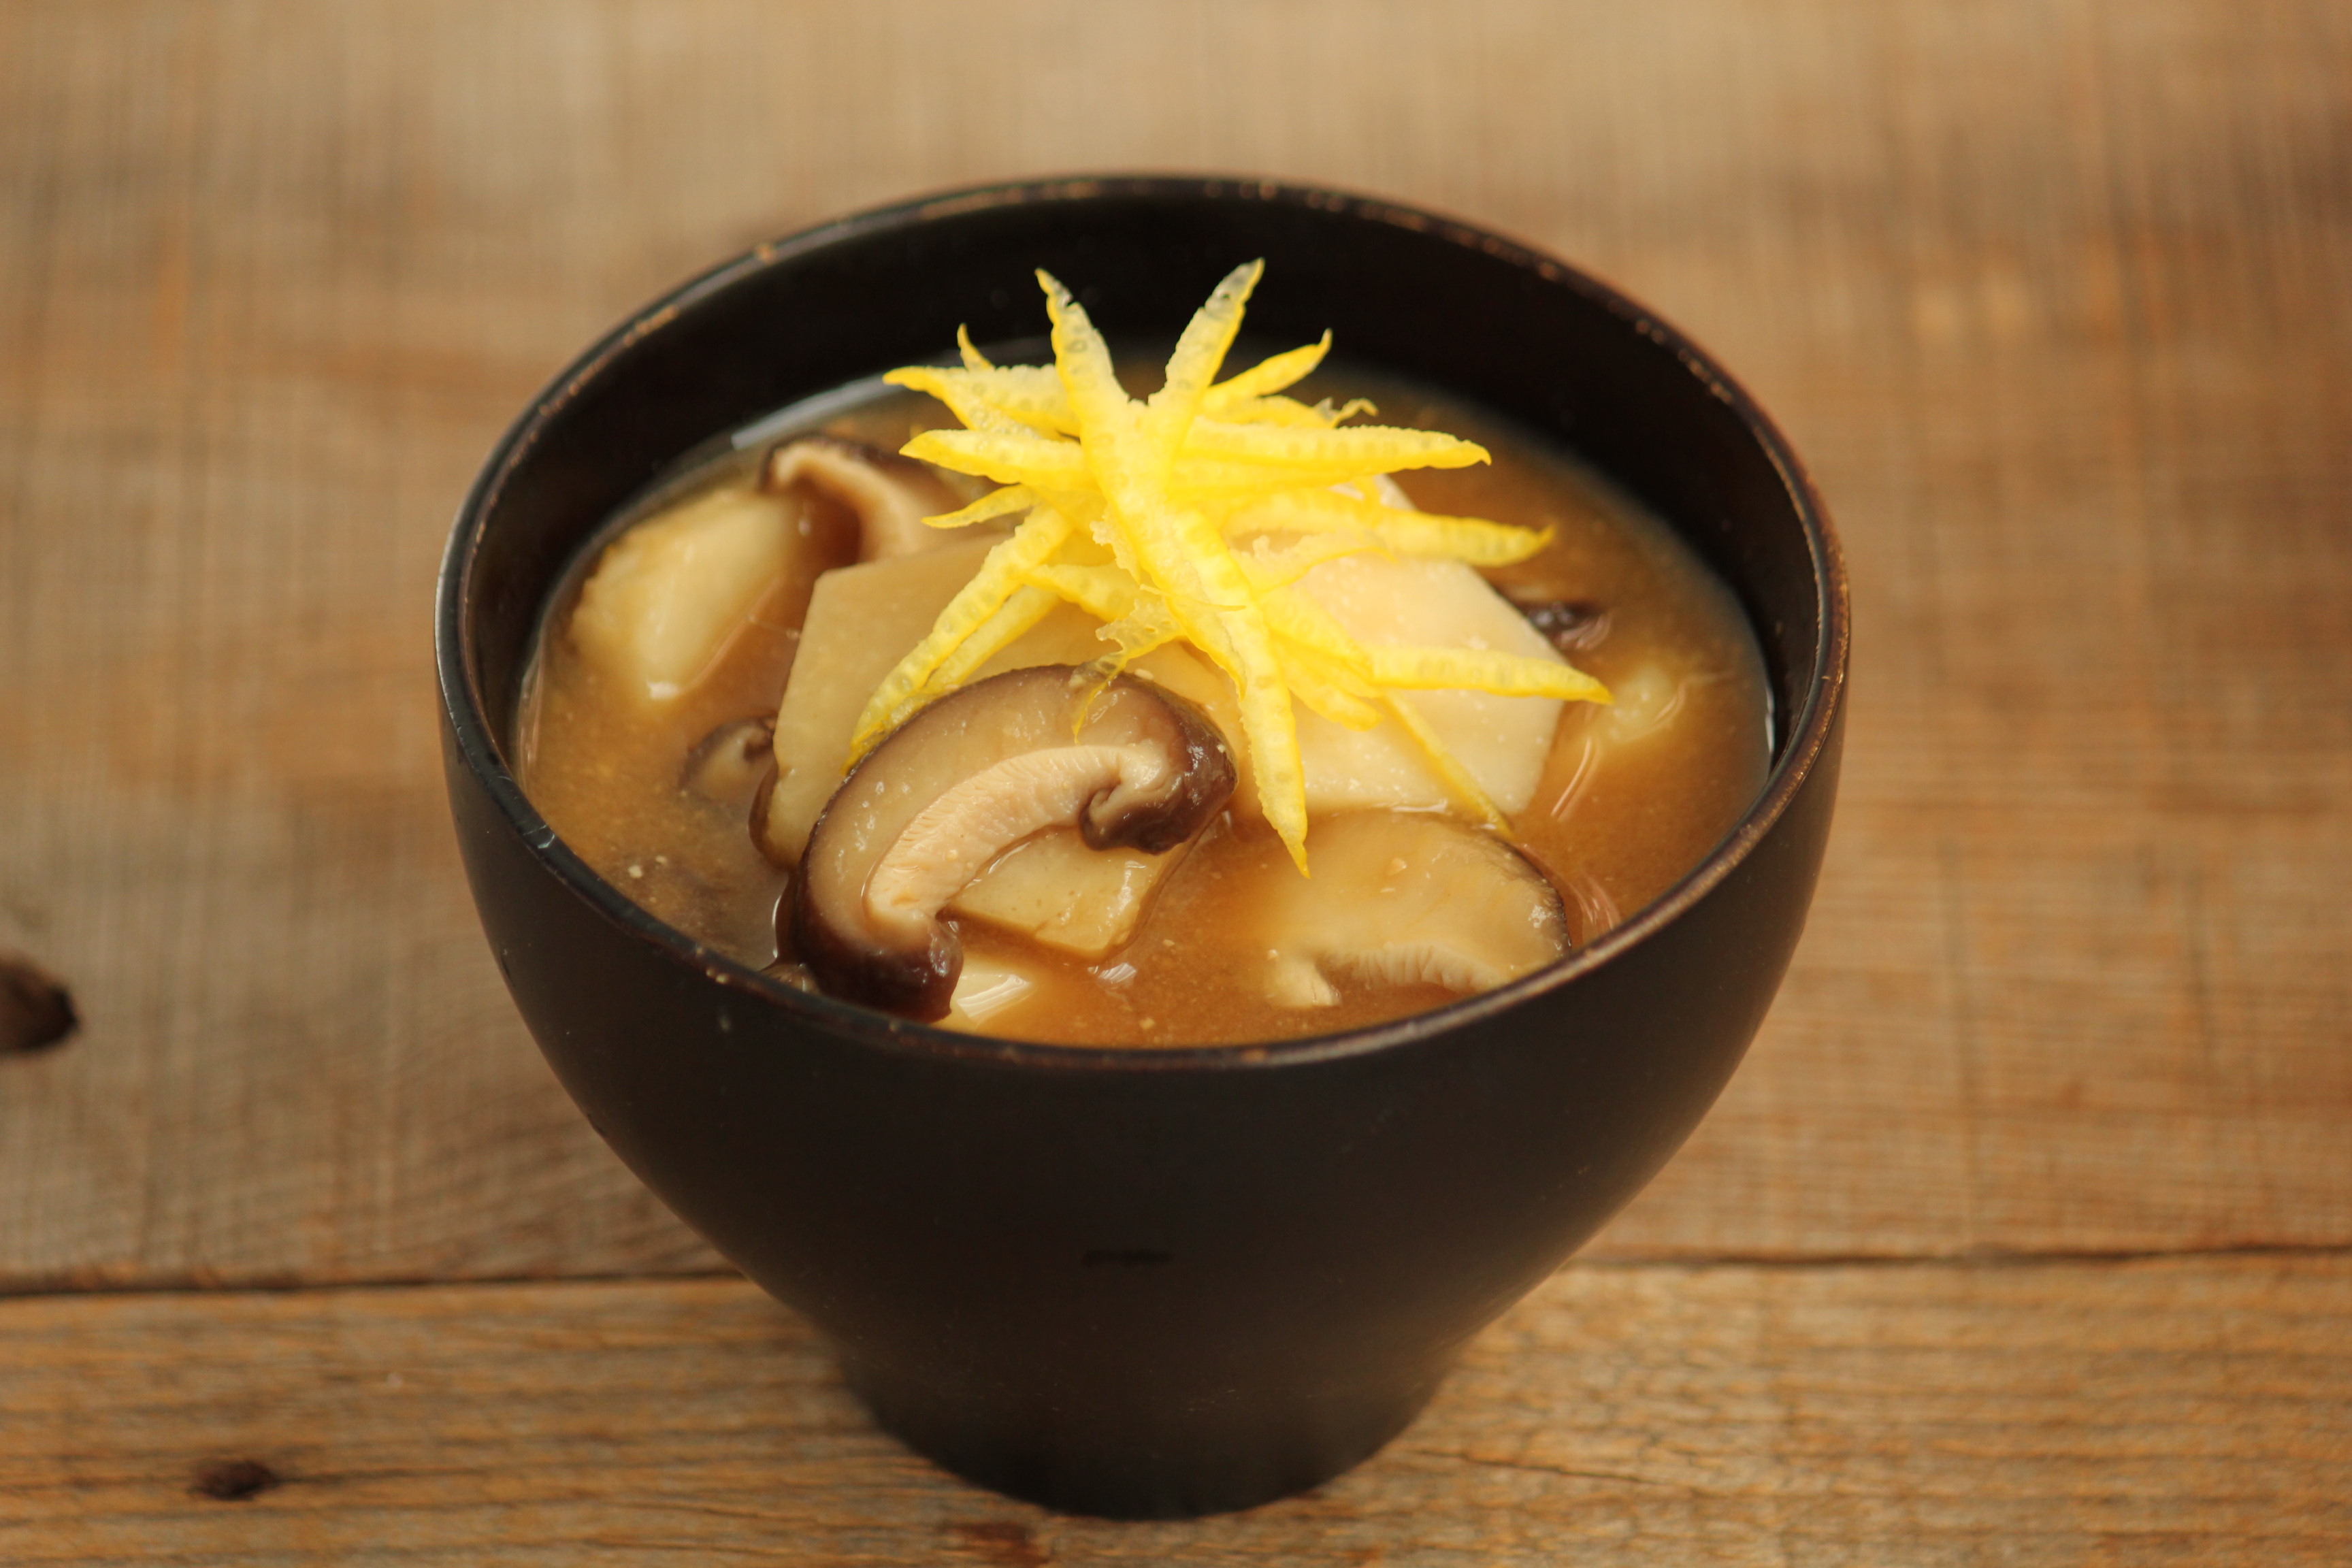 里芋と椎茸の味噌汁 ビジュアル系フード Powered By ライブドアブログ